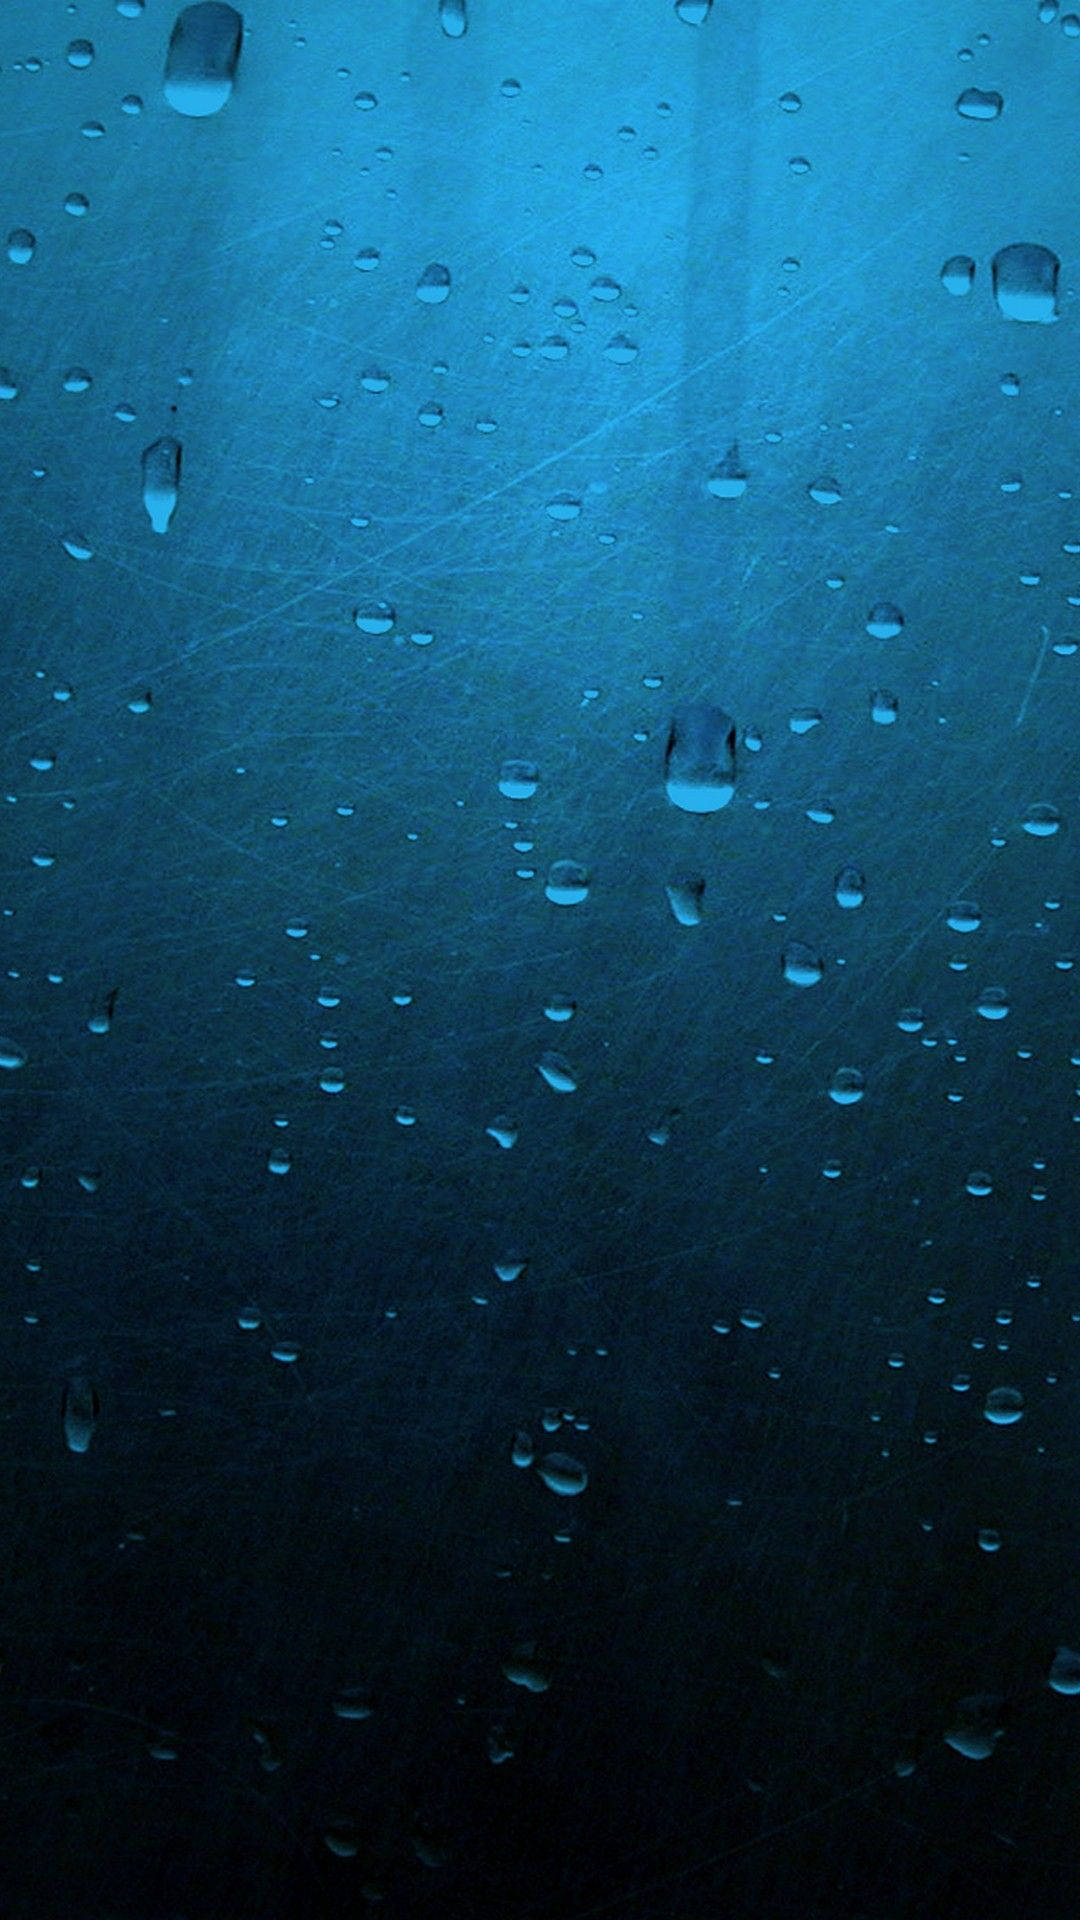 Rain Drop Wallpaper 77 images